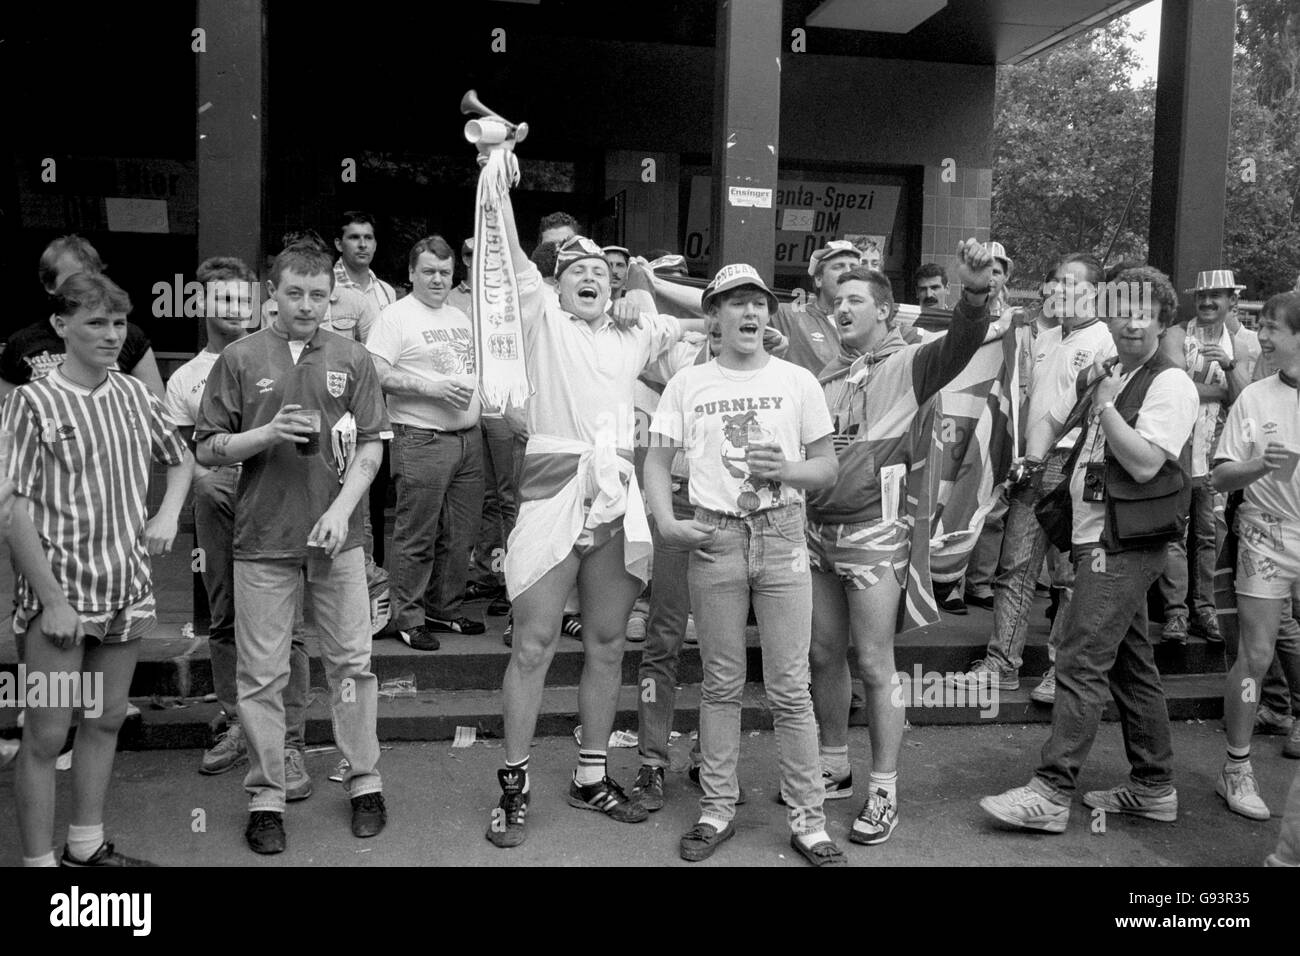 Football - Championnats d'Europe 1988 - Allemagne de l'Ouest. Les fans de l'Angleterre qui boivent et chantent dans la rue Banque D'Images